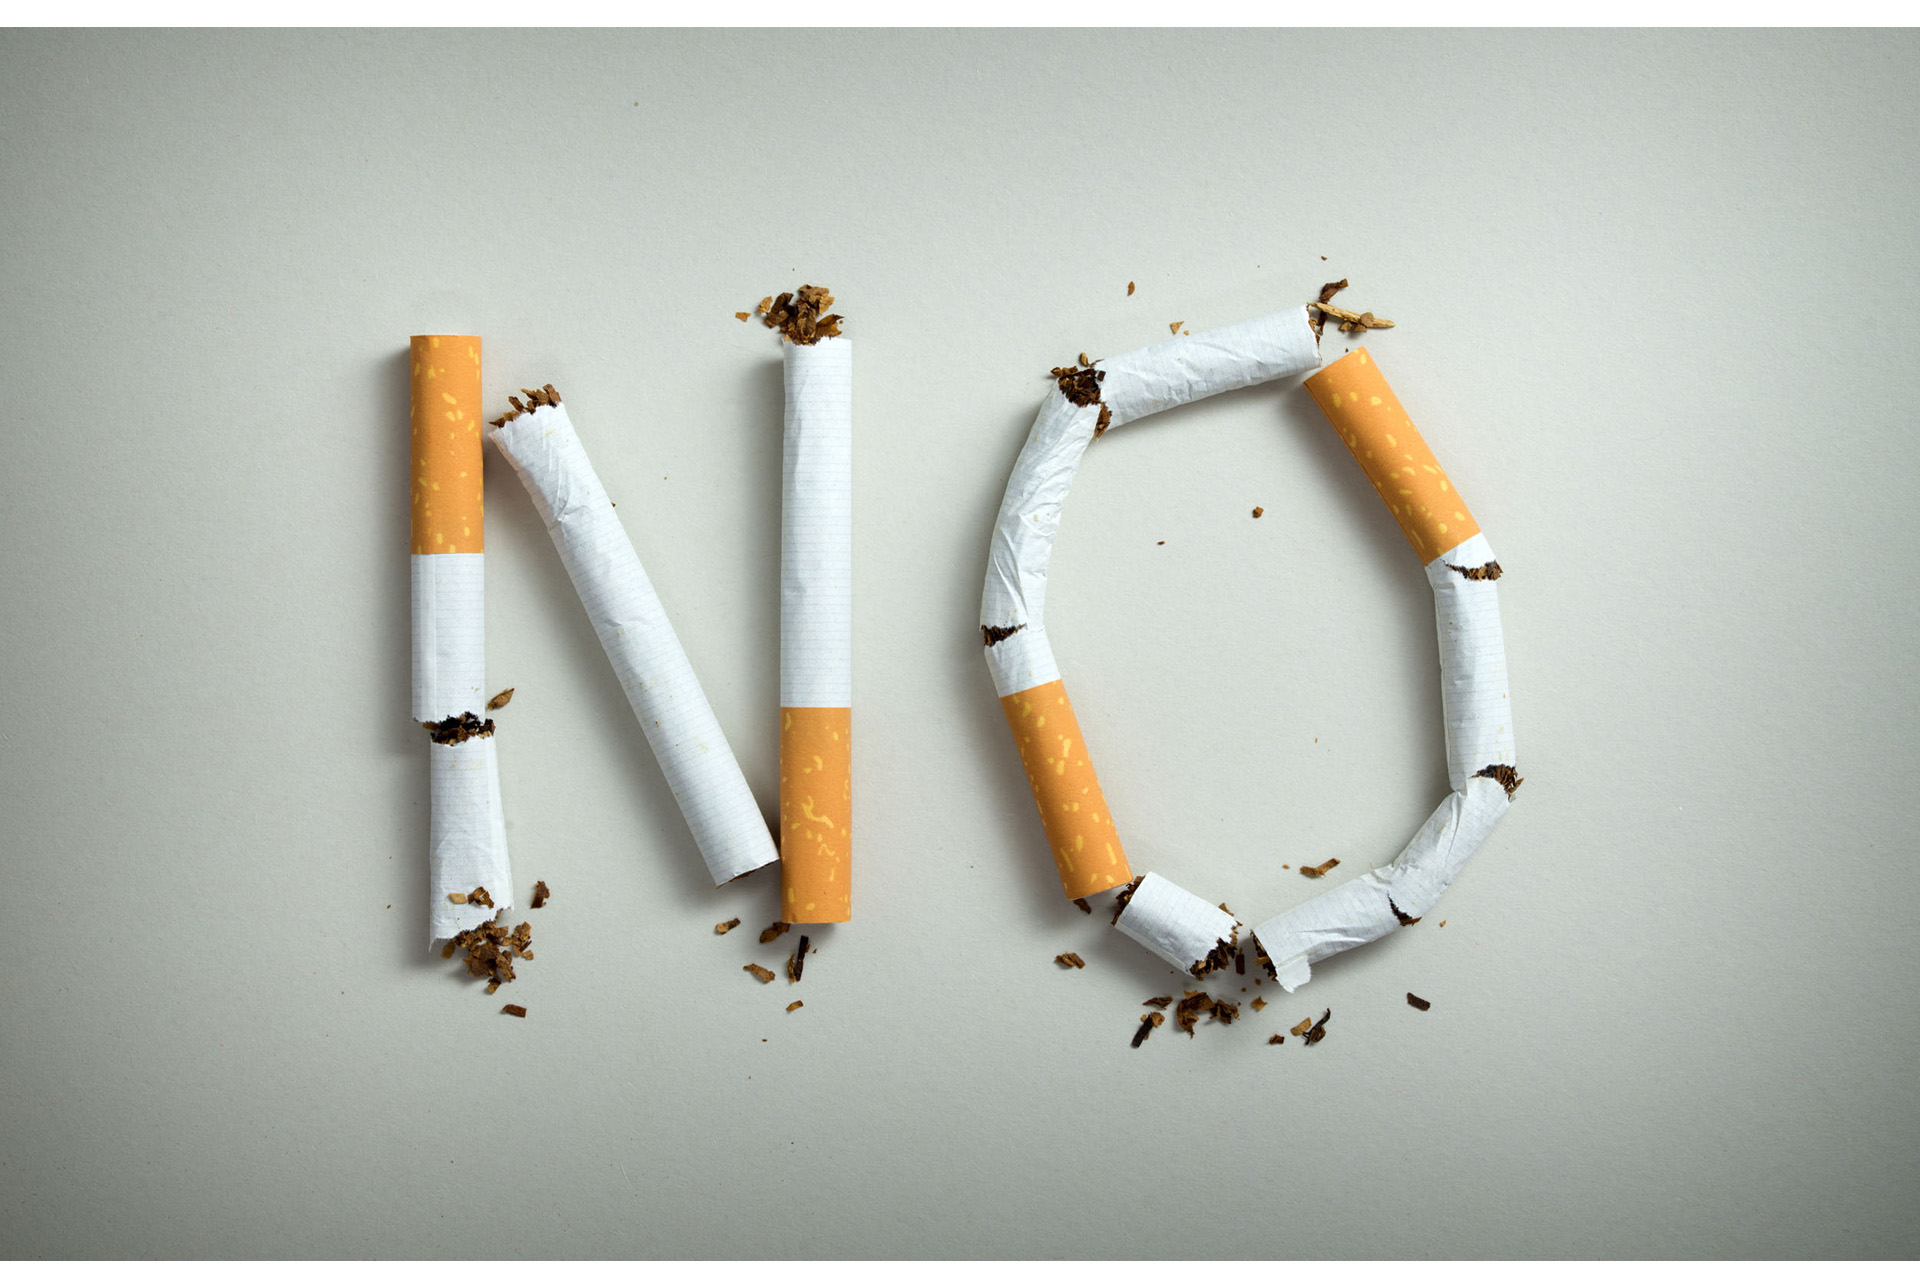 Día Mundial Sin Tabaco